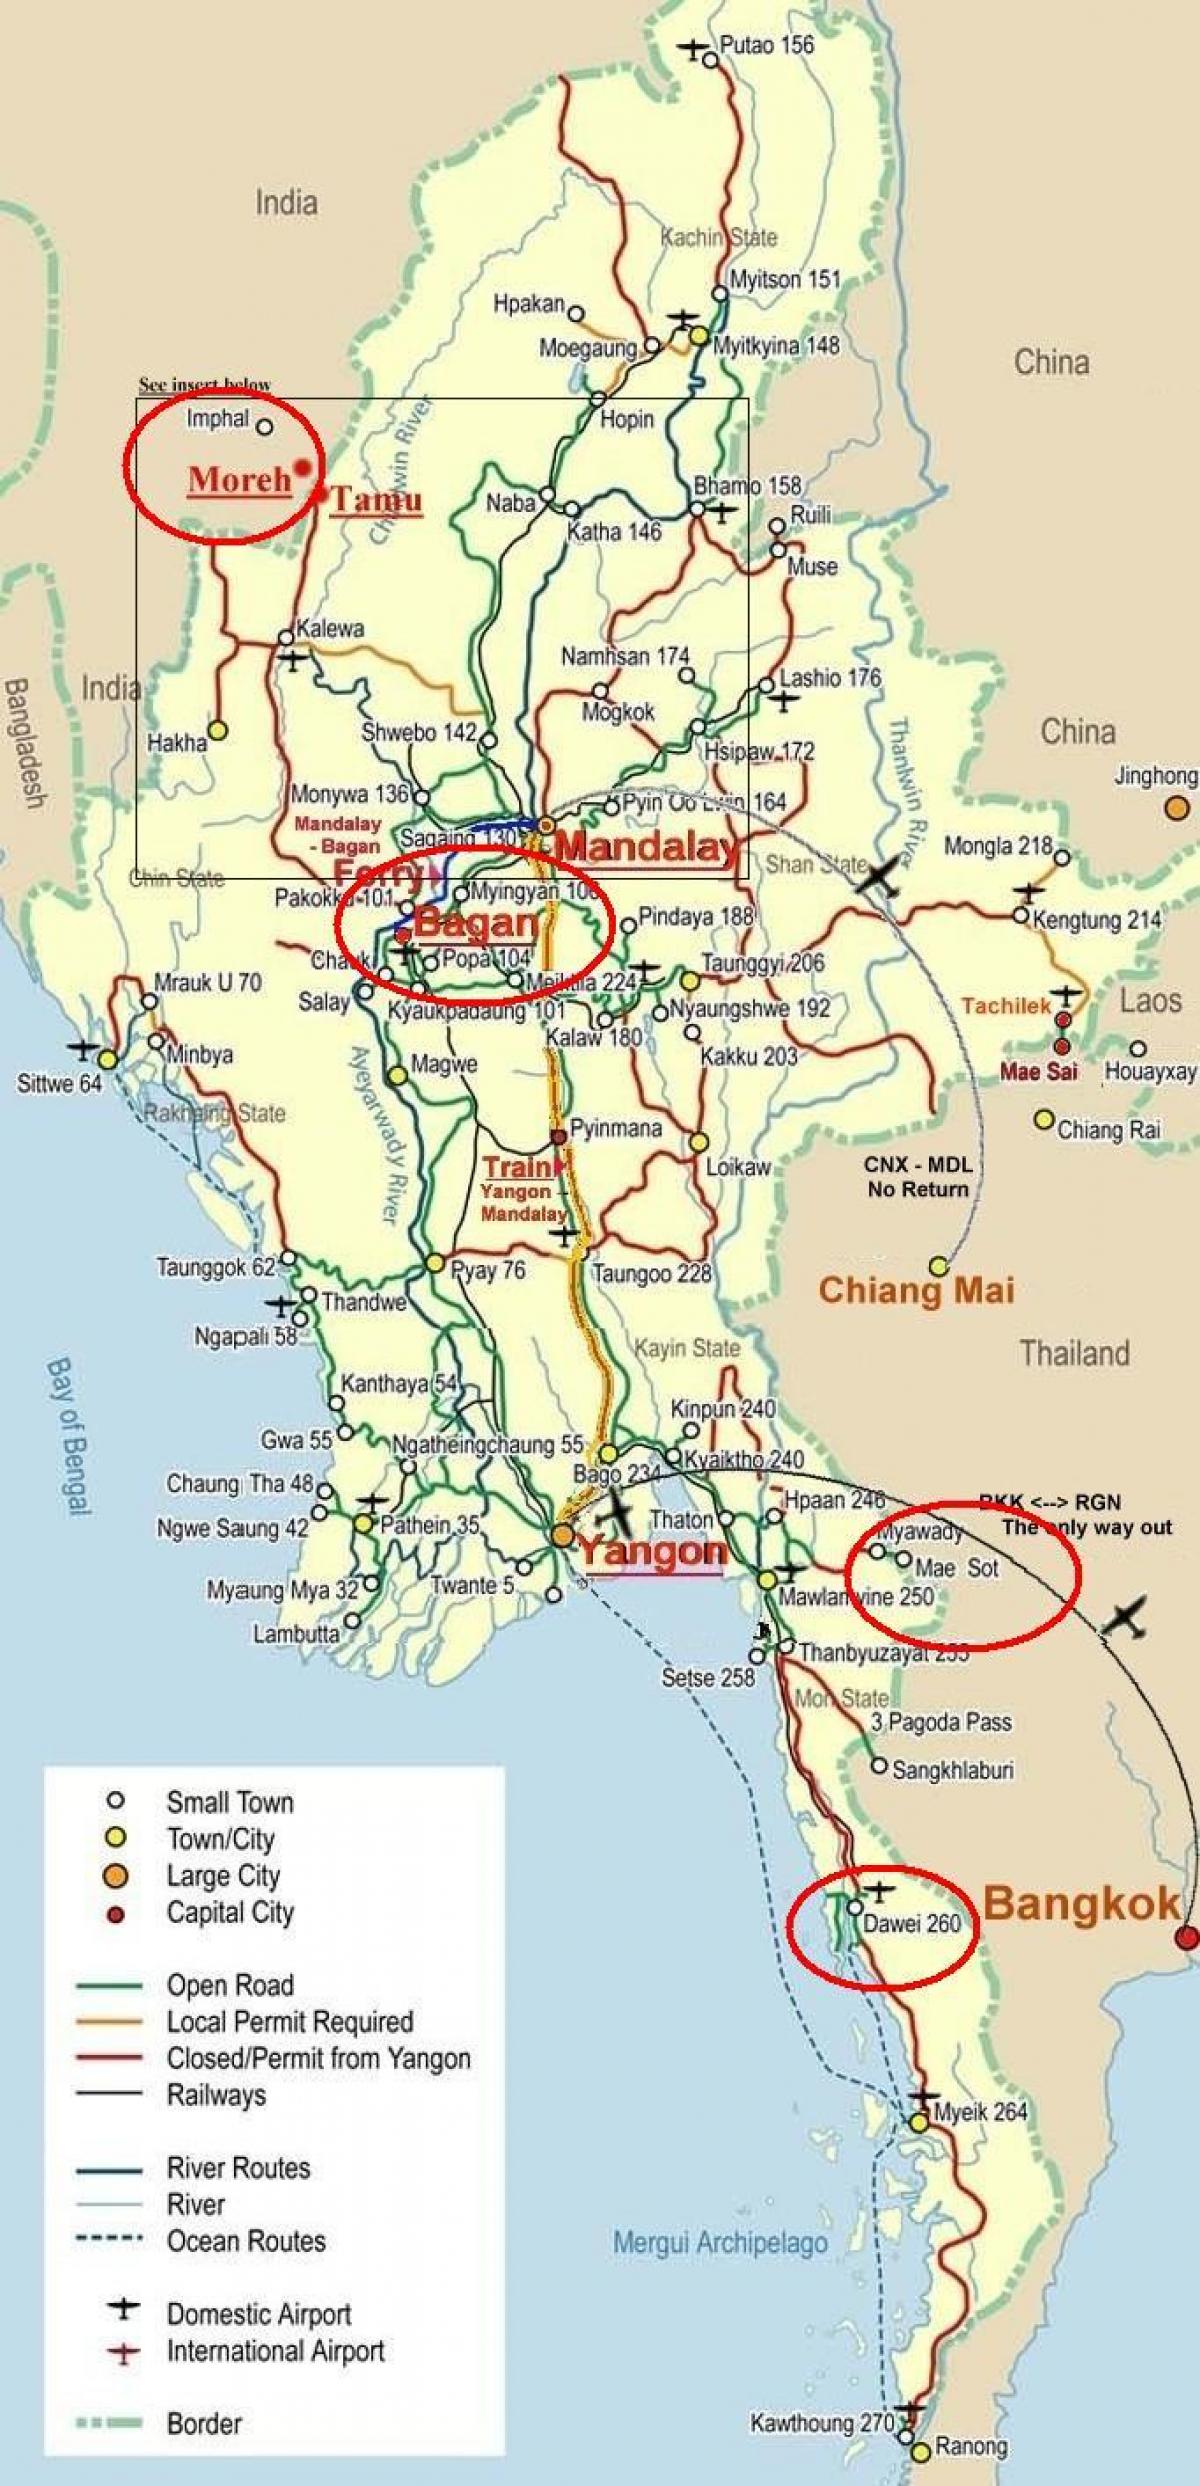 mappa di strada di bangkok